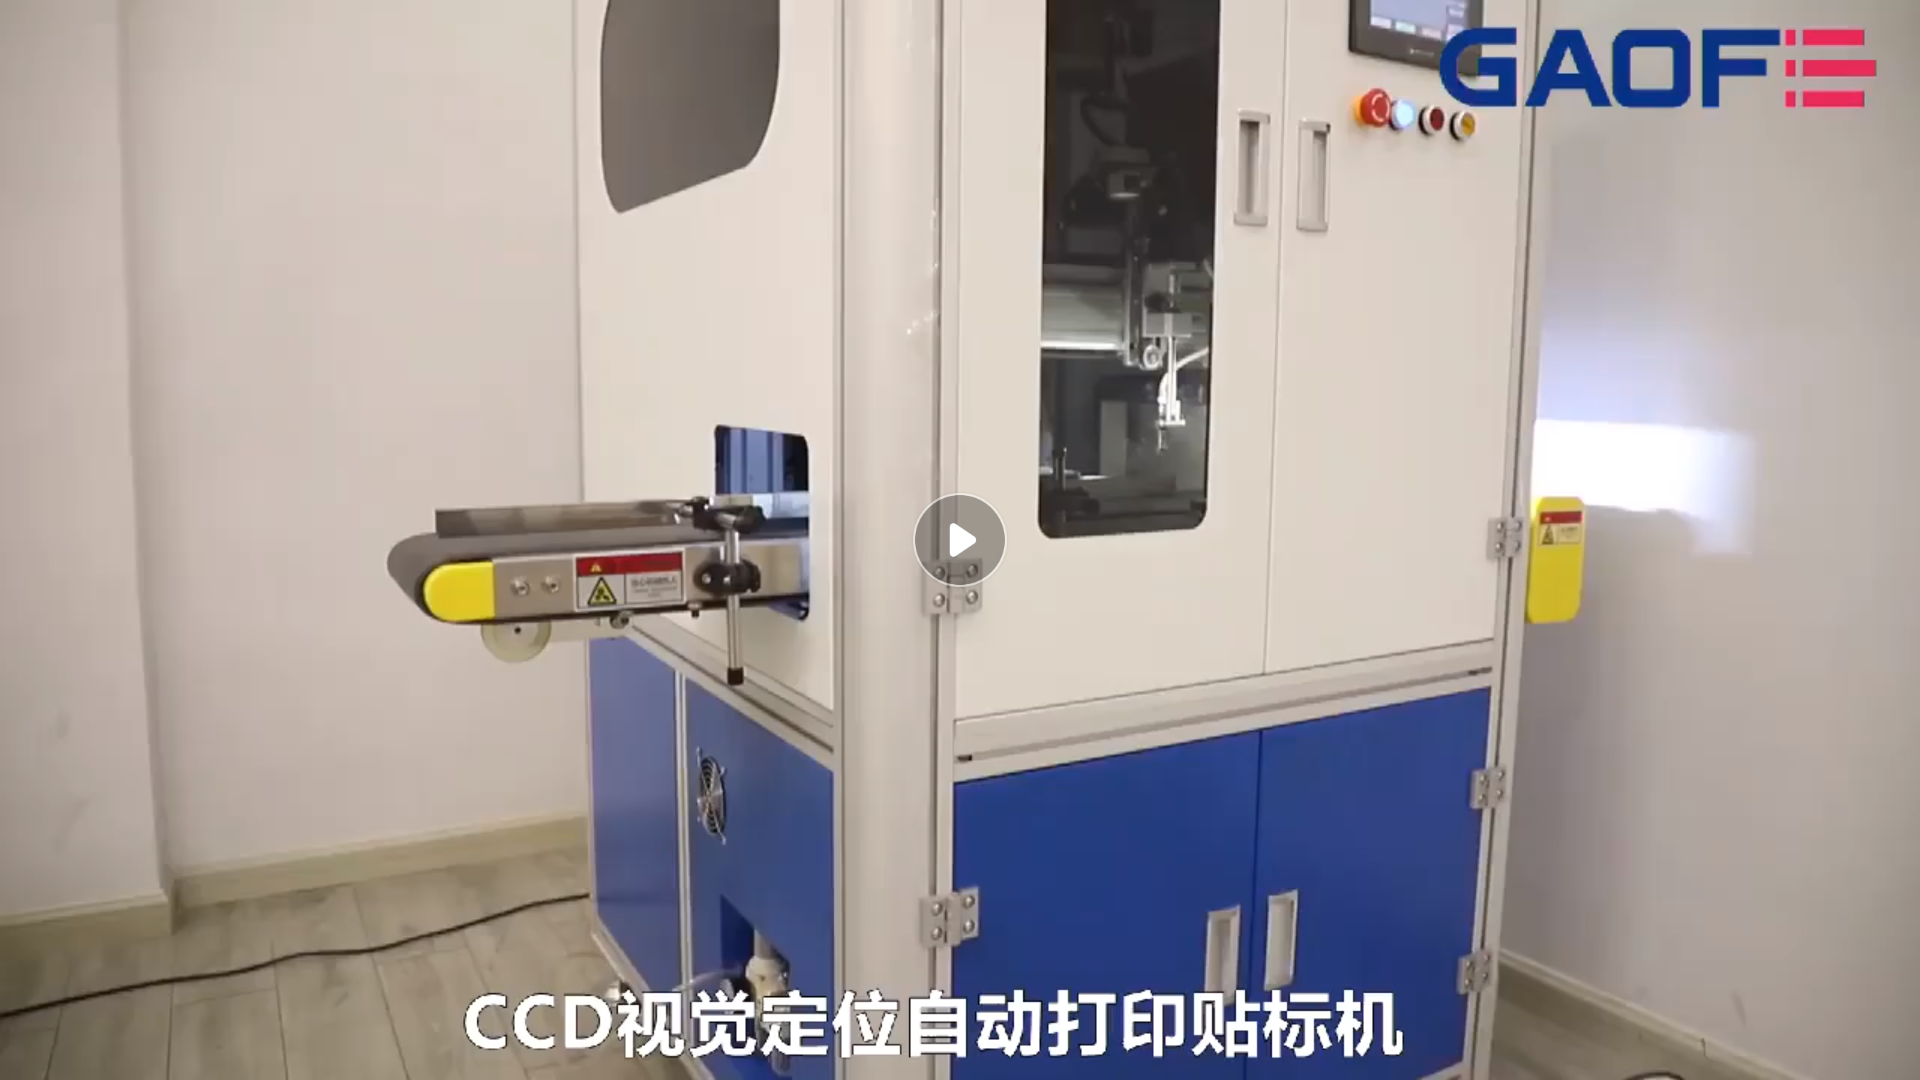 高赋码 CCD试管打印贴标机--医疗行业贴标方案